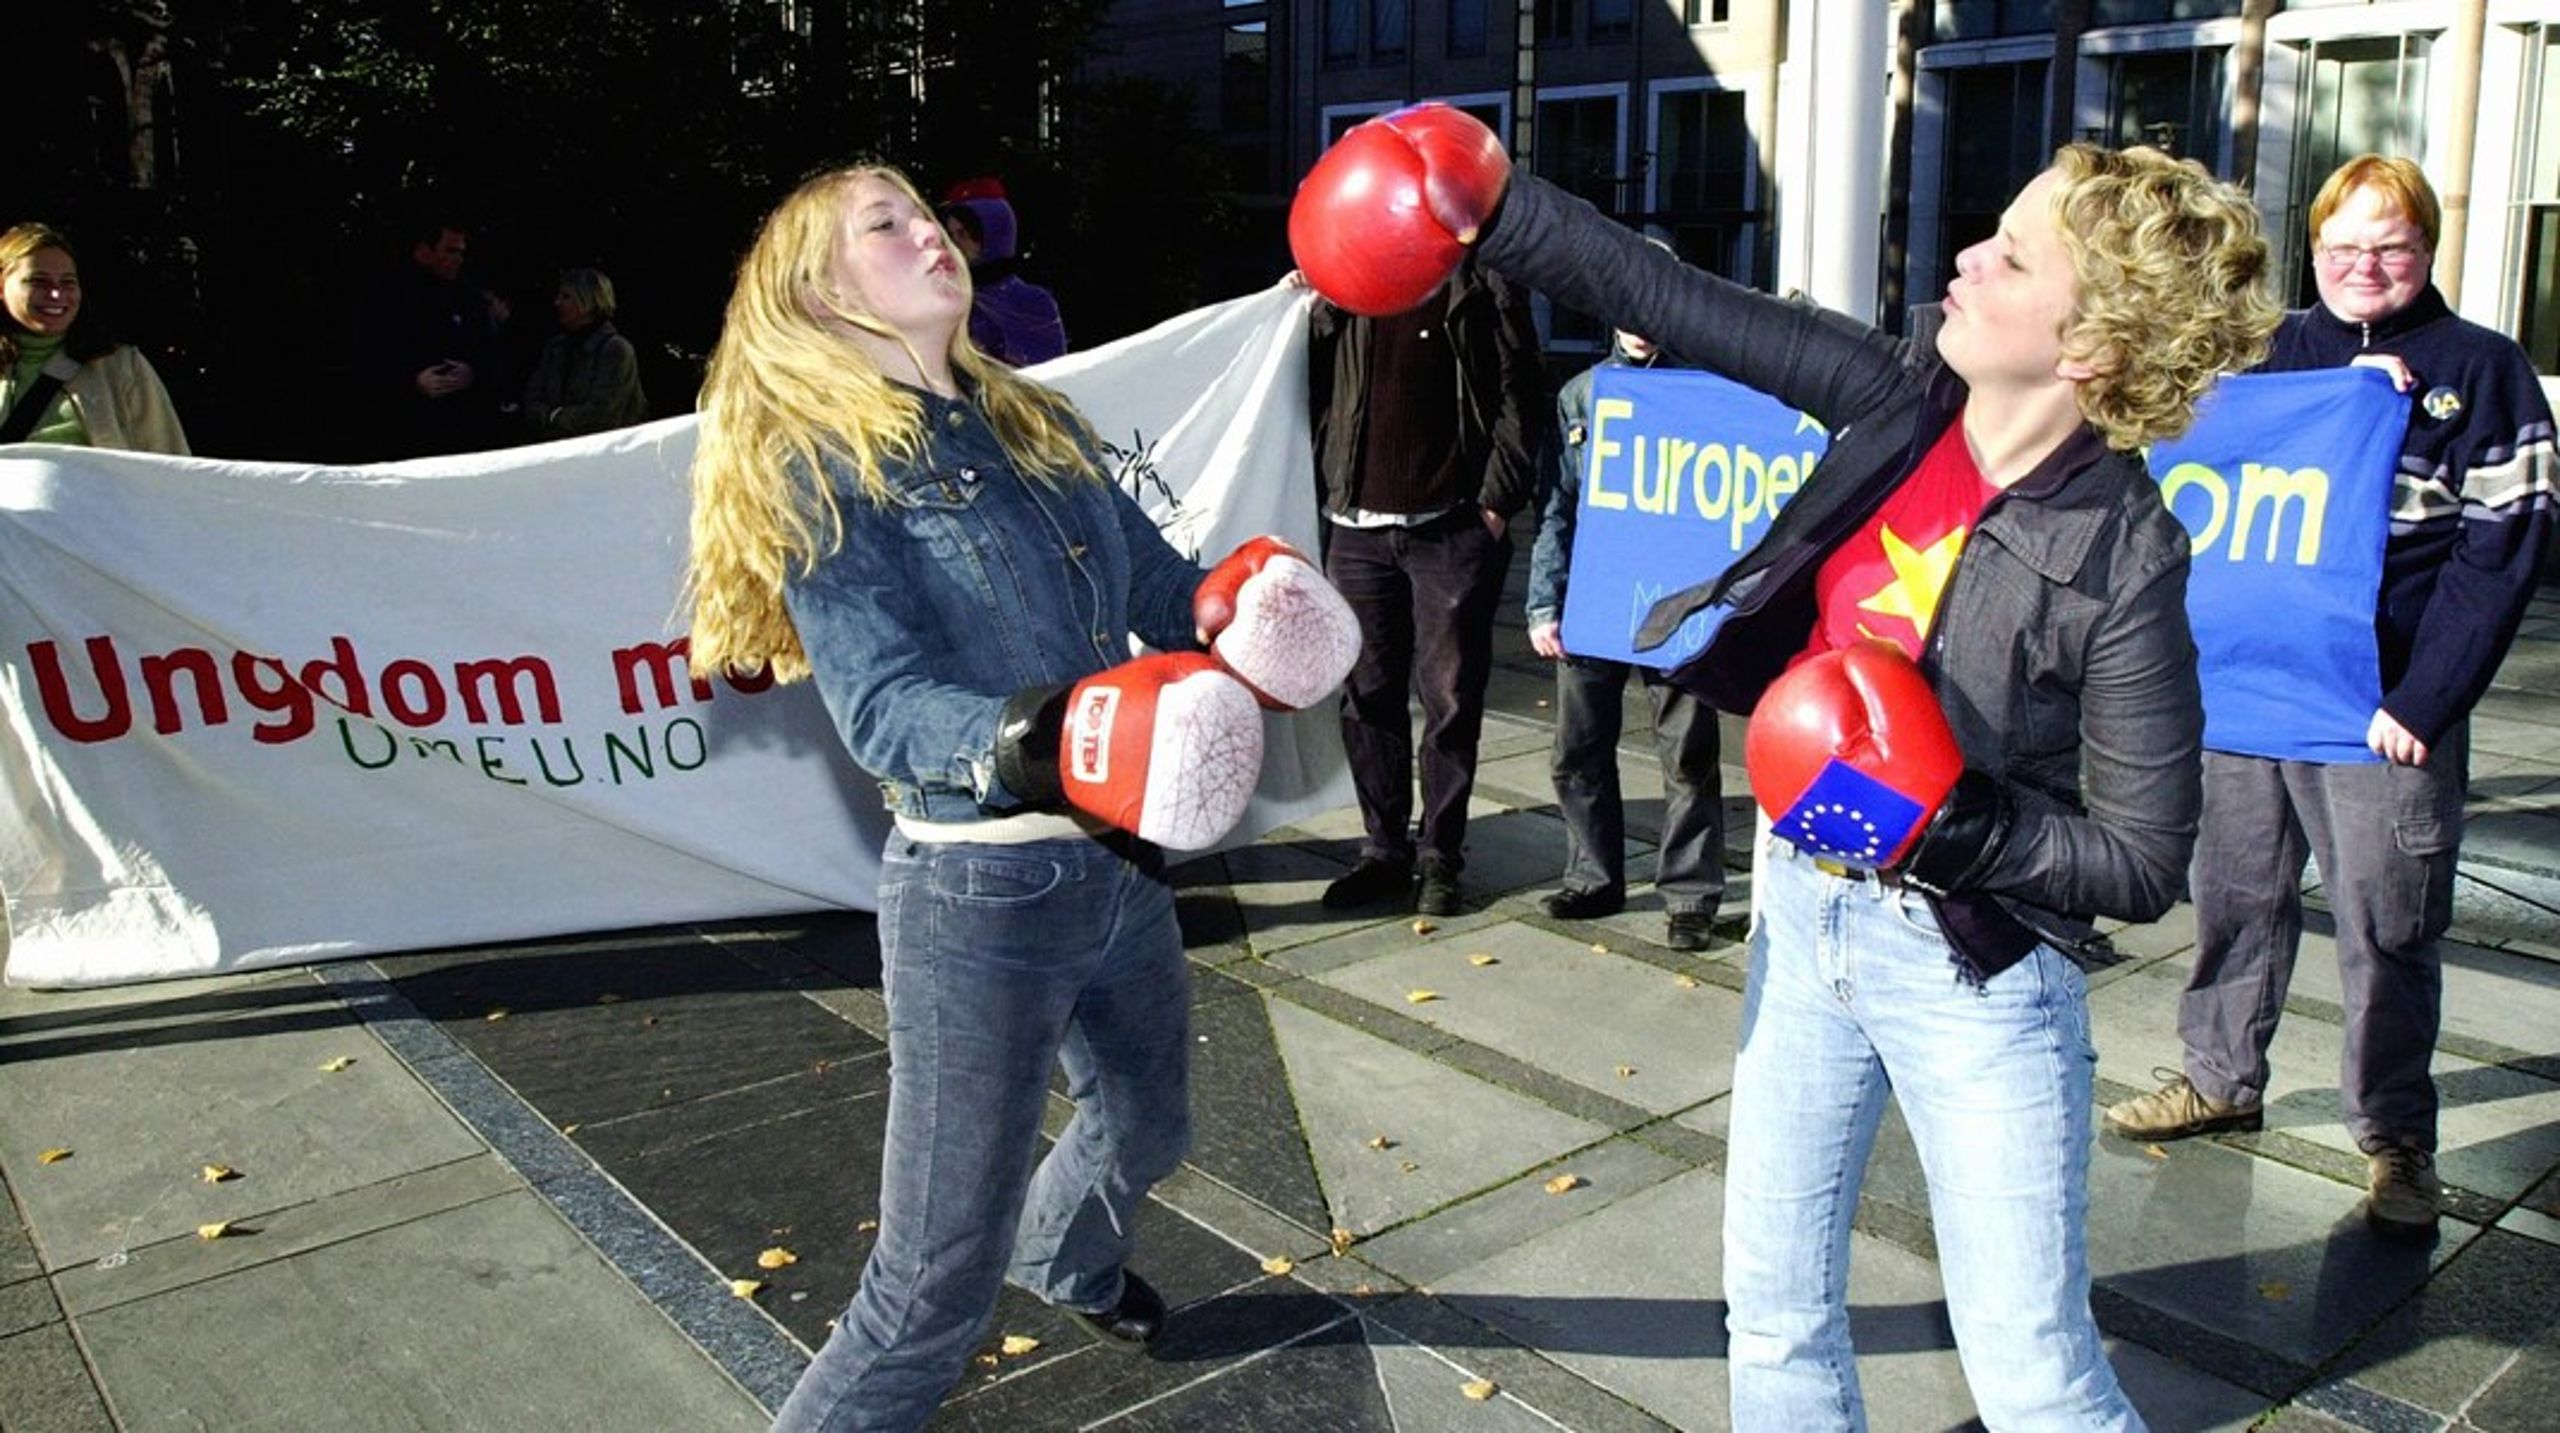 Unge debatterer for og mot norsk medlemskap i EU i Altingets spalter. Her er en tidligere frisk meningsutveksling mellom daværende leder i Ungdom mot EU Maria Walberg, og daværende&nbsp;leder i Europeisk Ungdom Ingrid Langerud.&nbsp;